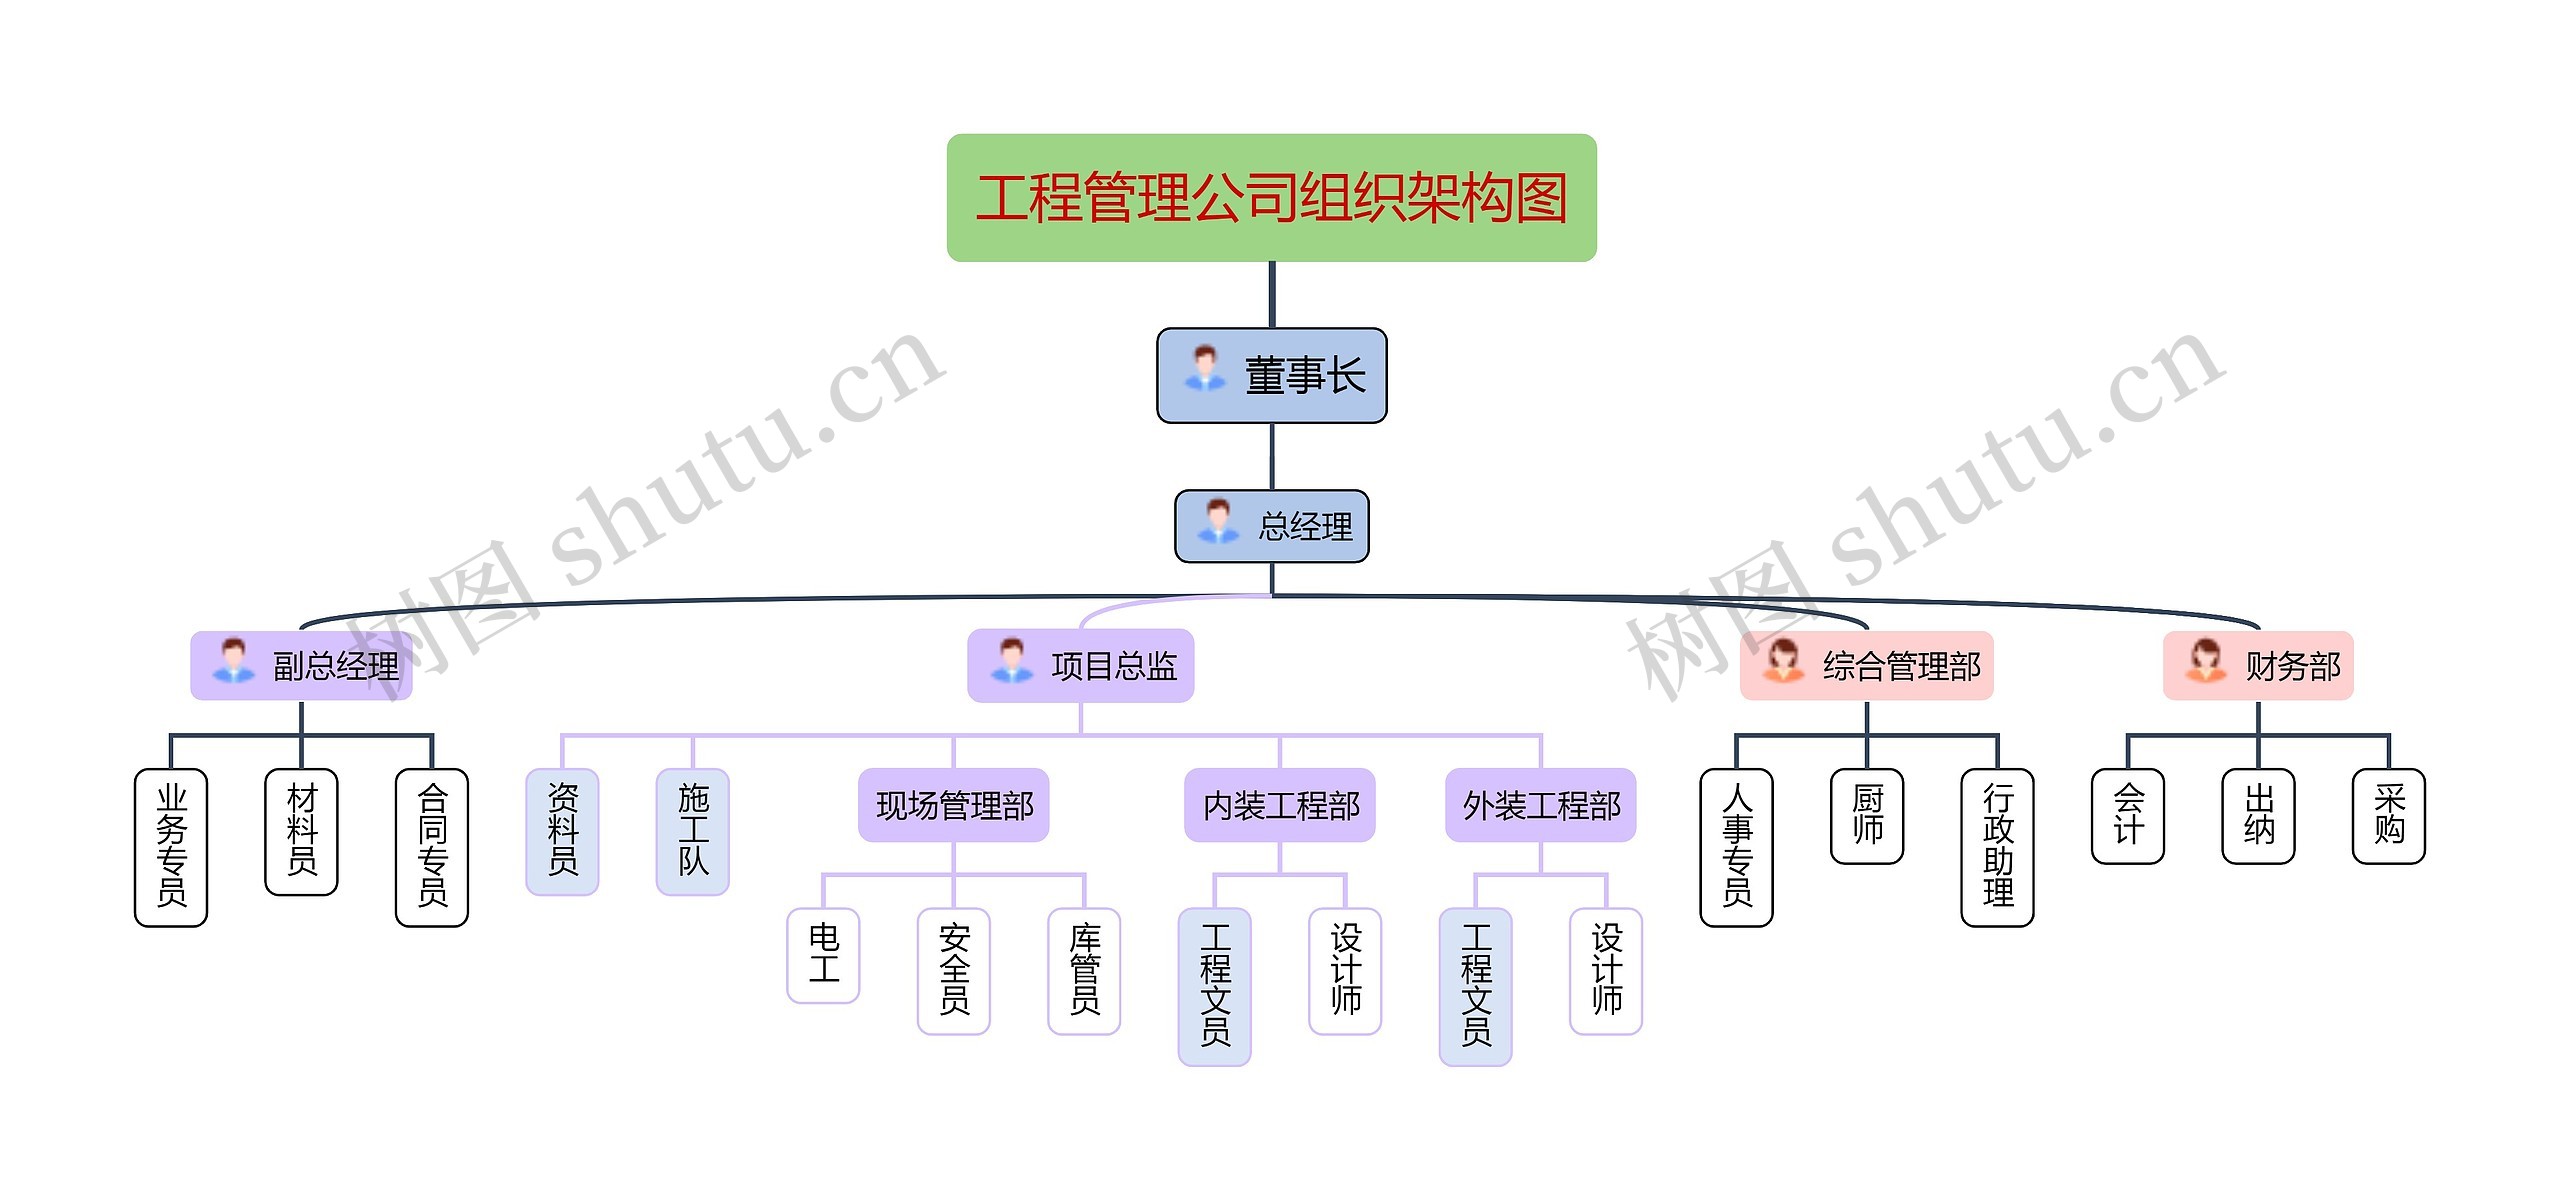 工程管理公司组织架构图